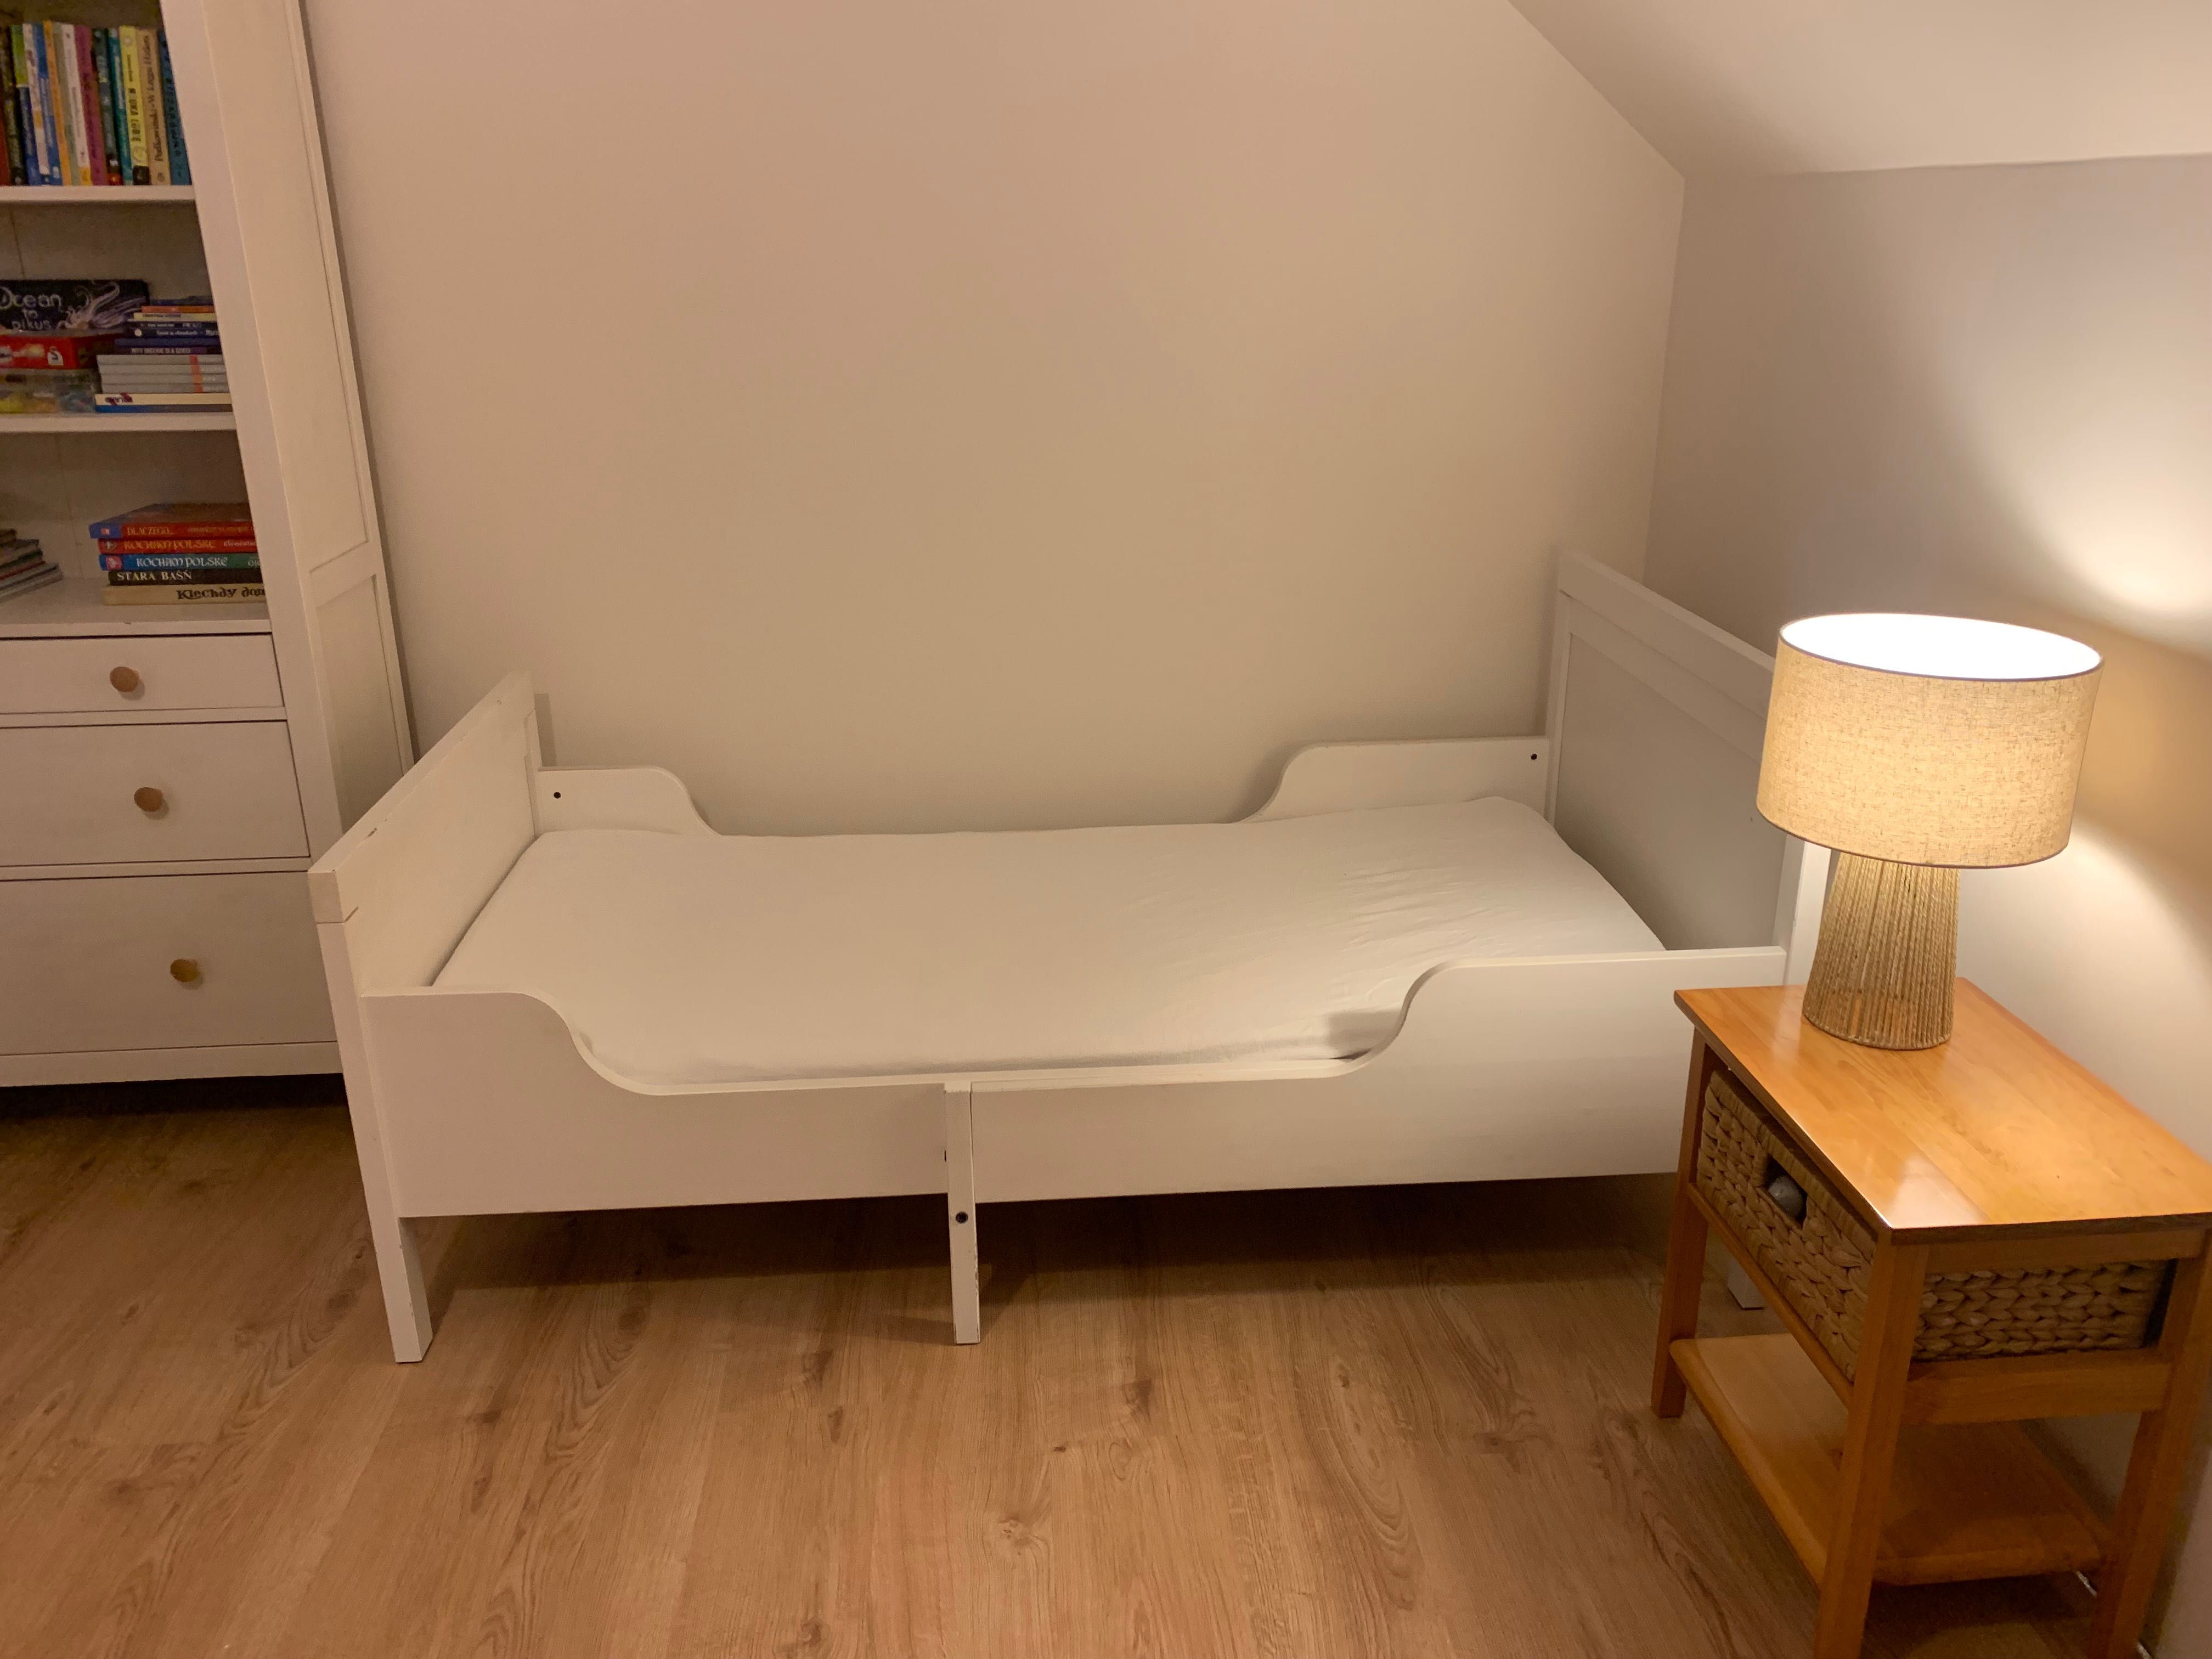 Łóżko Ikea Sundvik rozsuwane drewniane